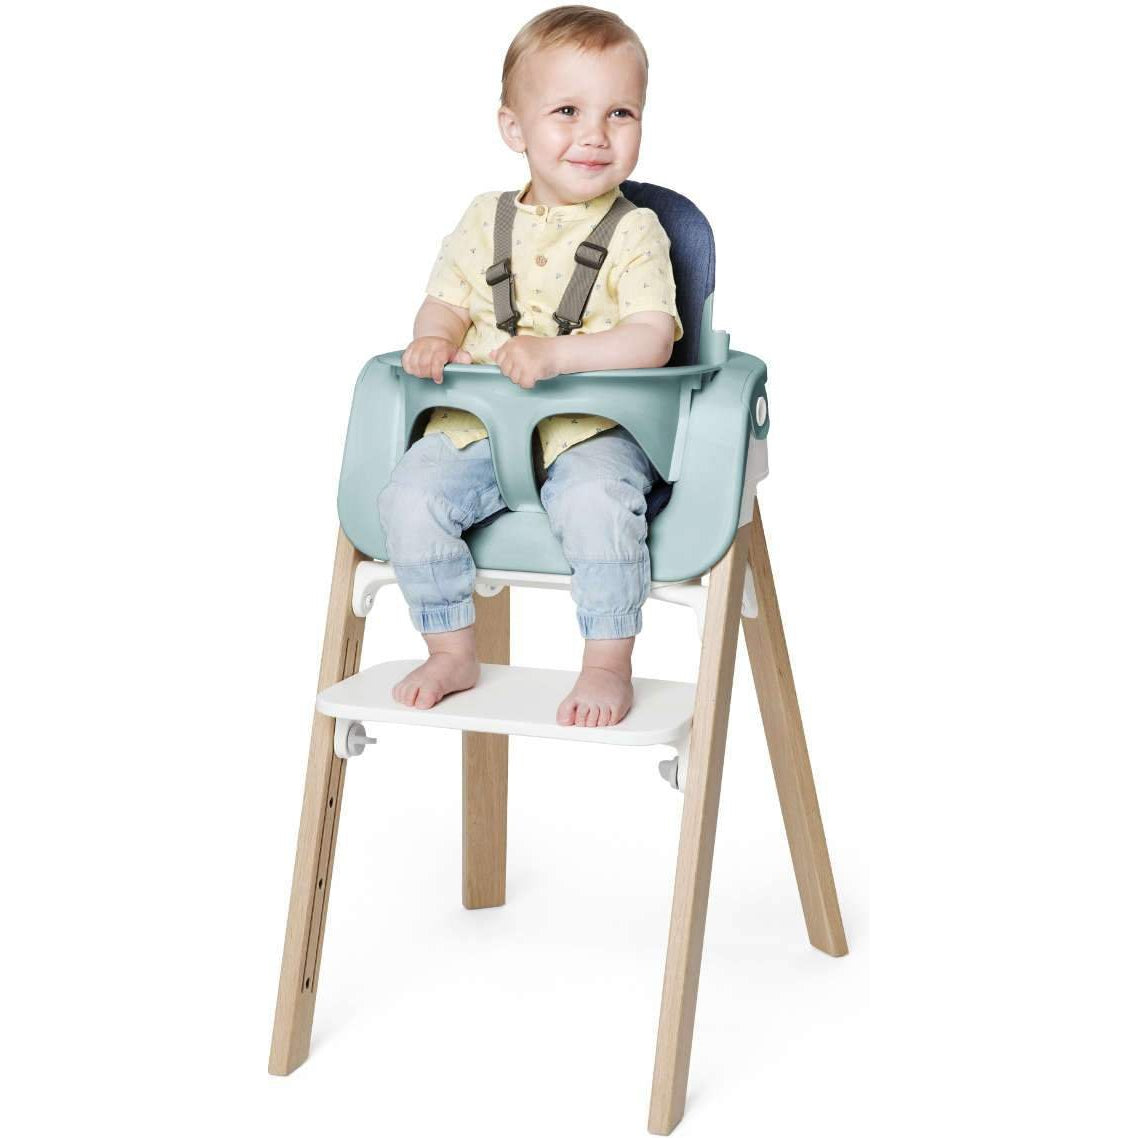 Stokke Steps Chair - Twinkle Twinkle Little One